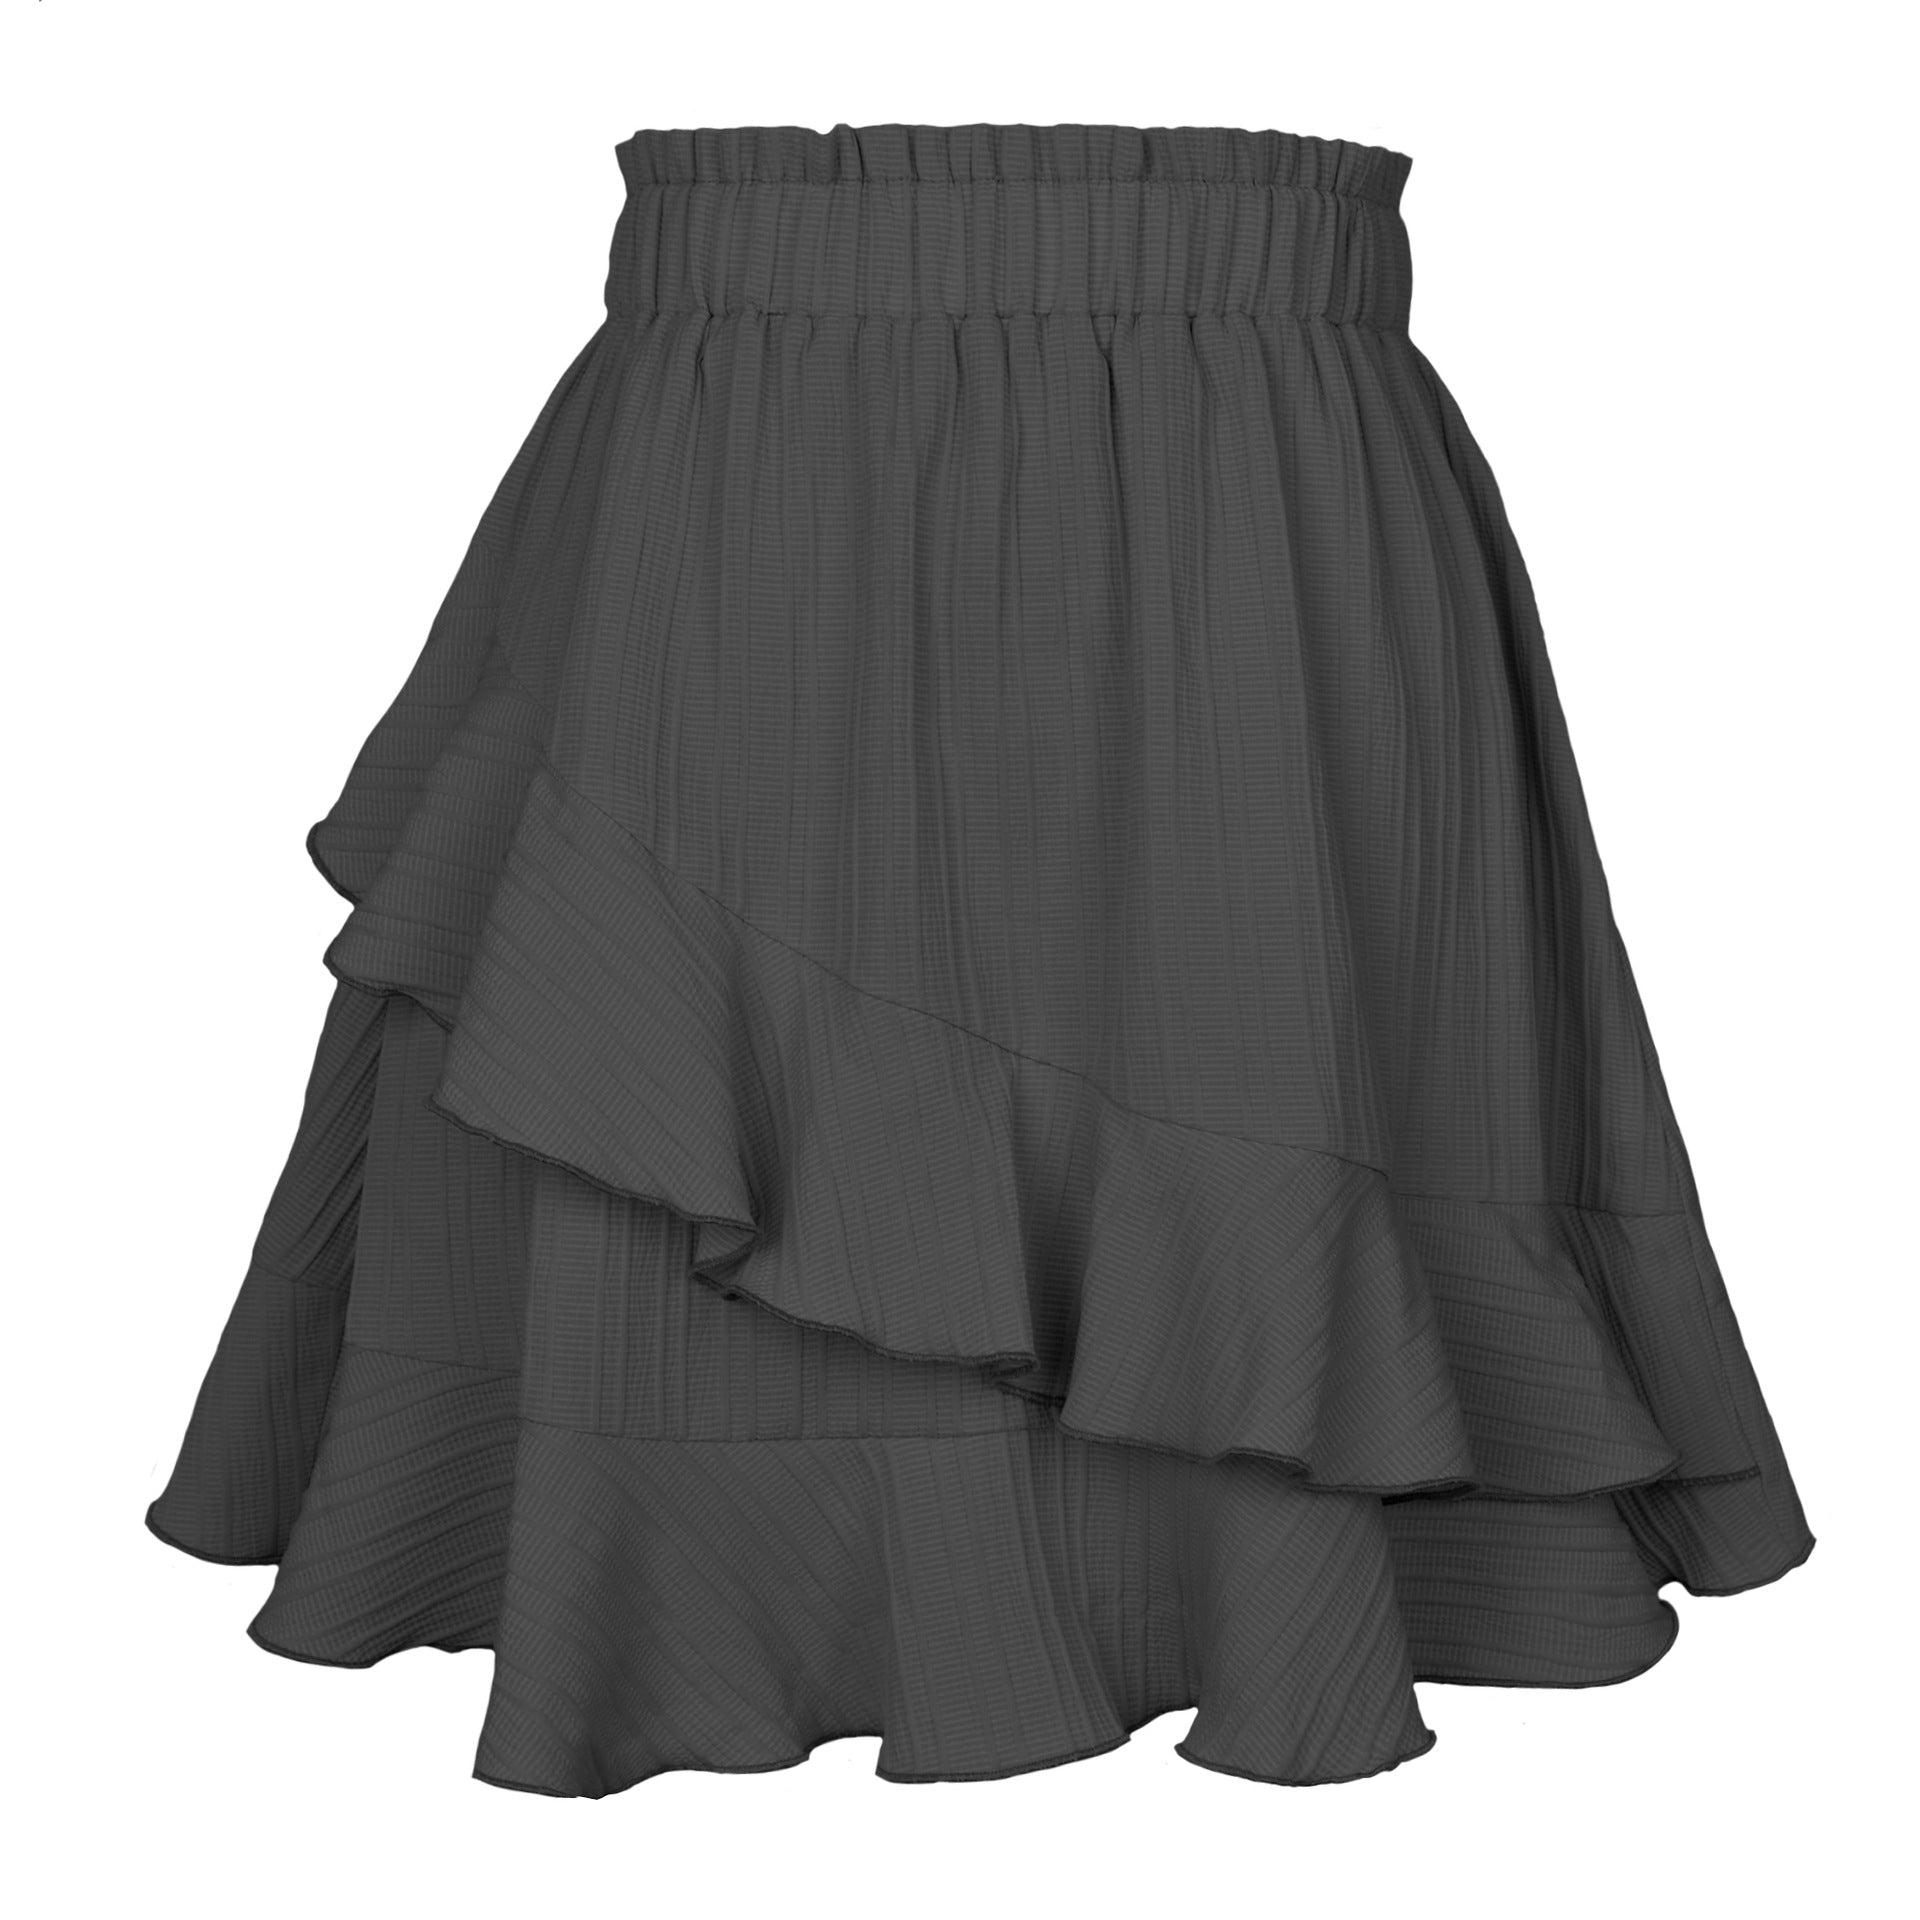 Summer Ruffled Fresh And Sweet Women's High Waist Irregular Solid Color Skirt